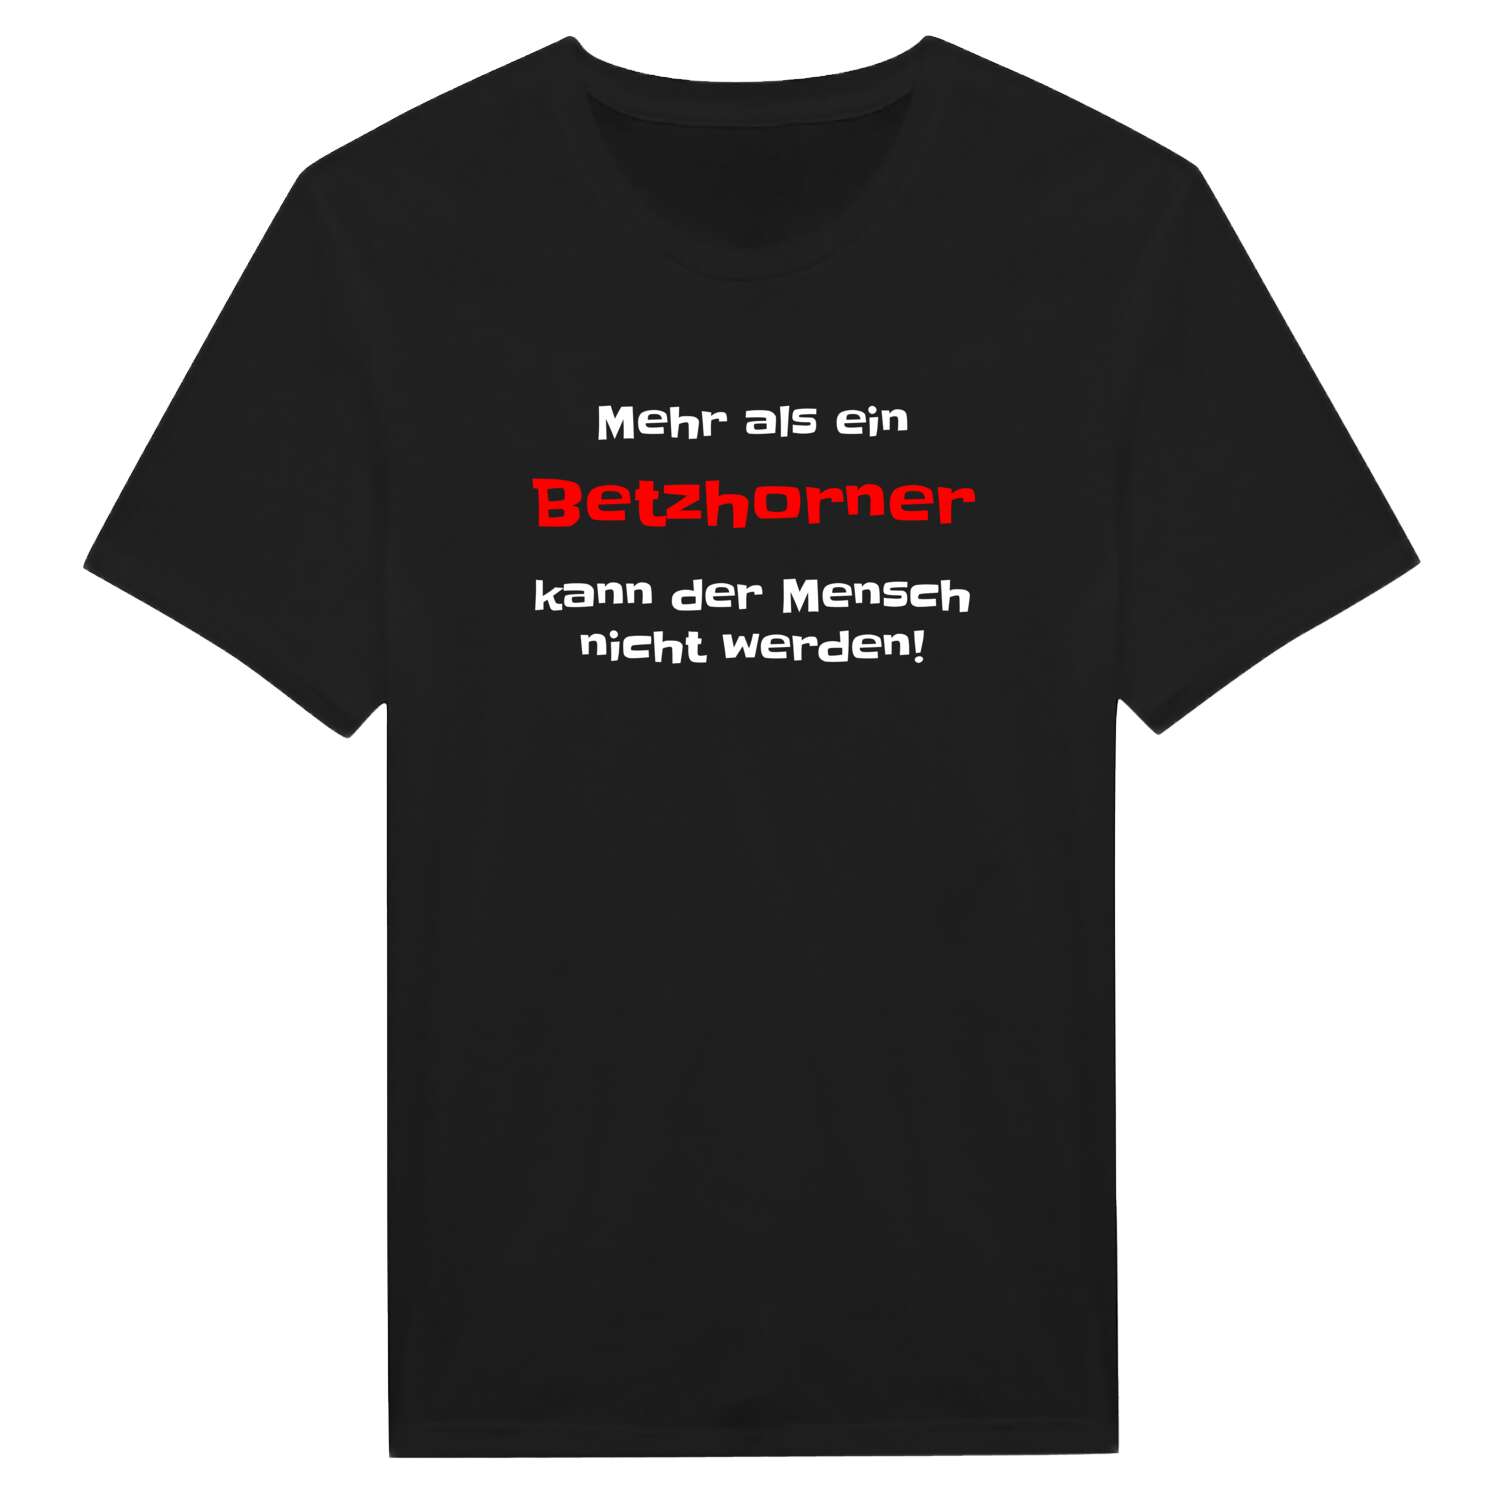 Betzhorn T-Shirt »Mehr als ein«